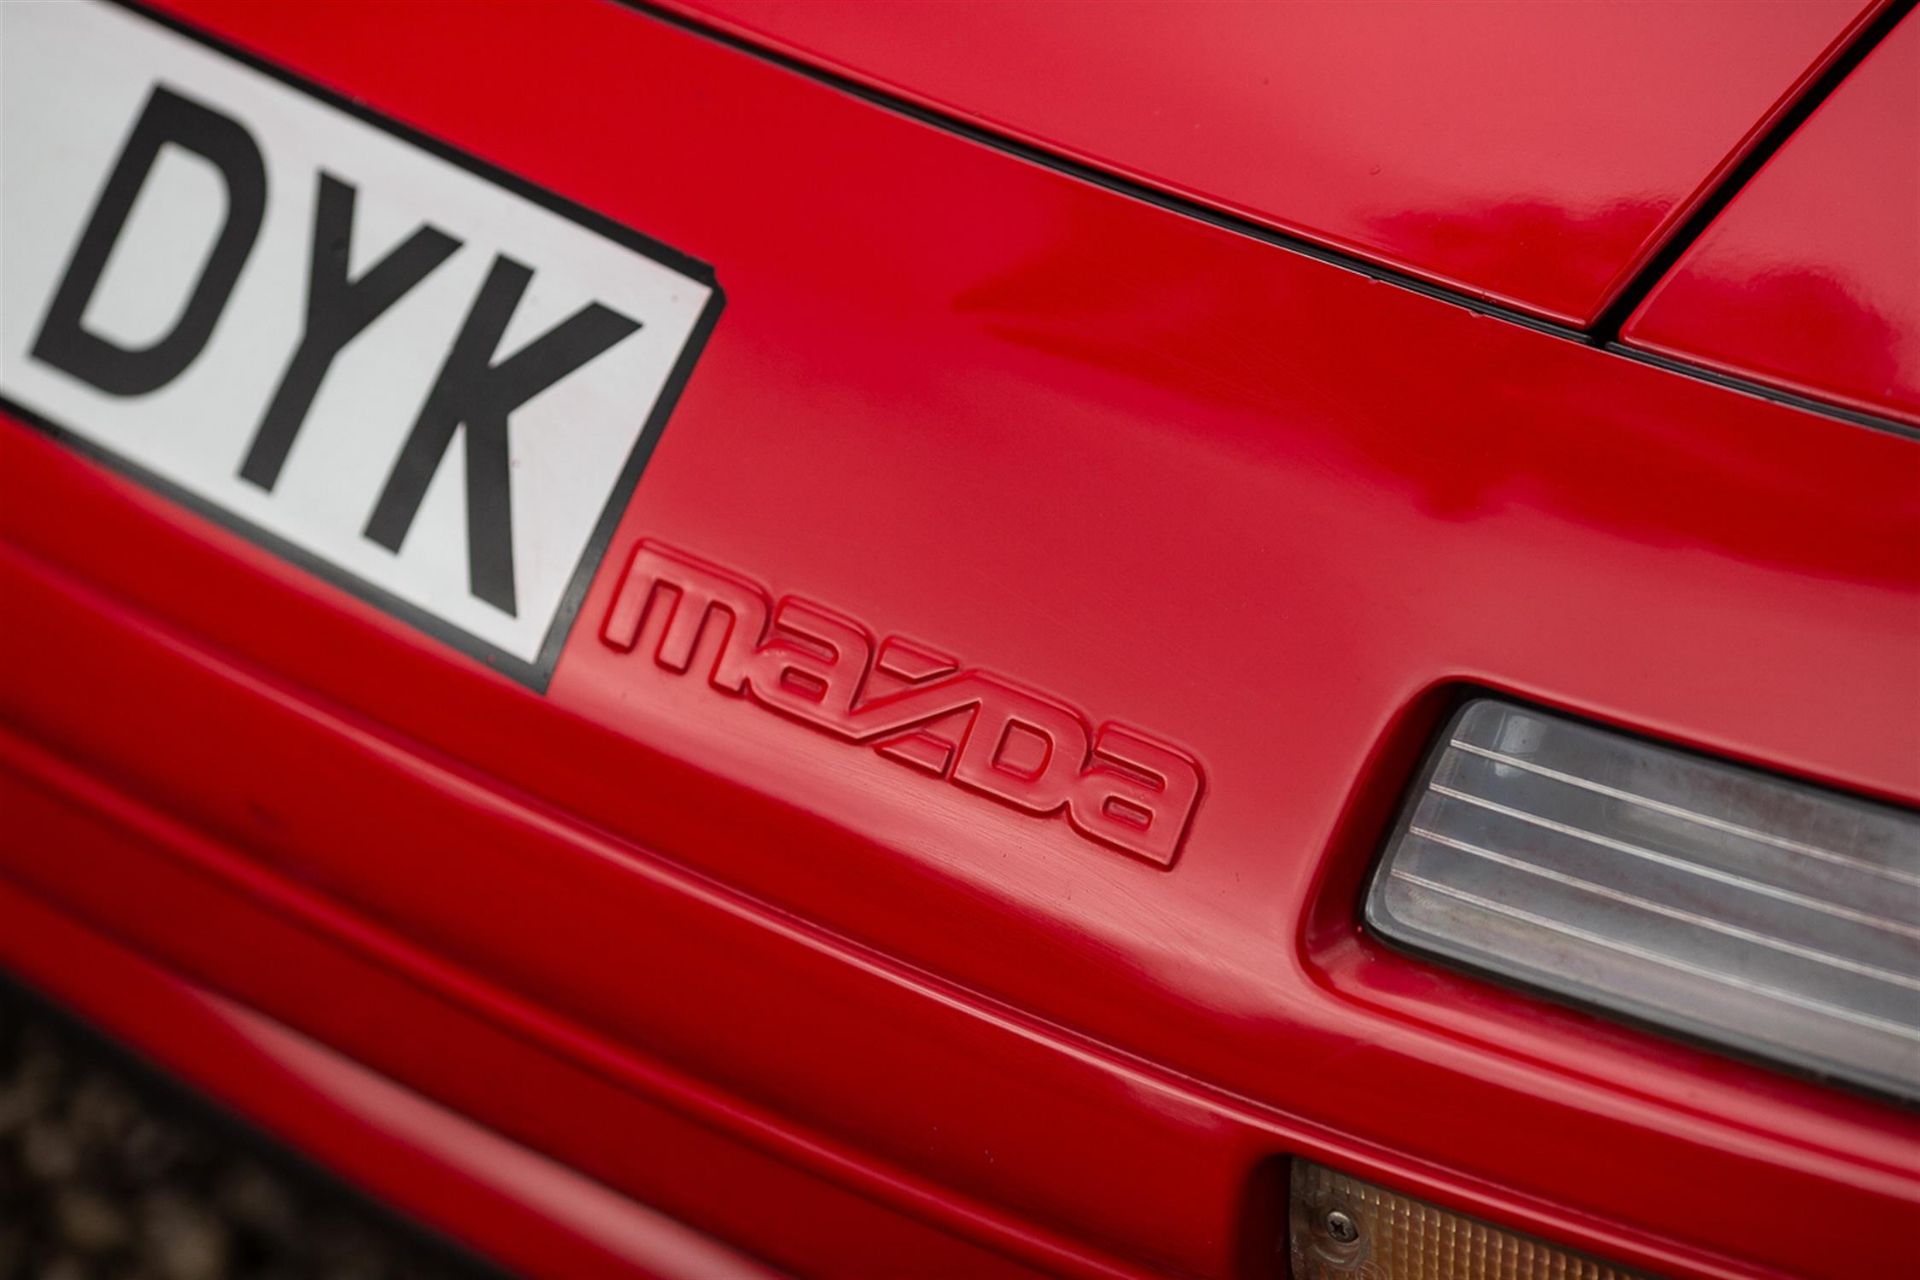 1992 Mazda RX-7 Turbo II Cabrio - Image 9 of 10